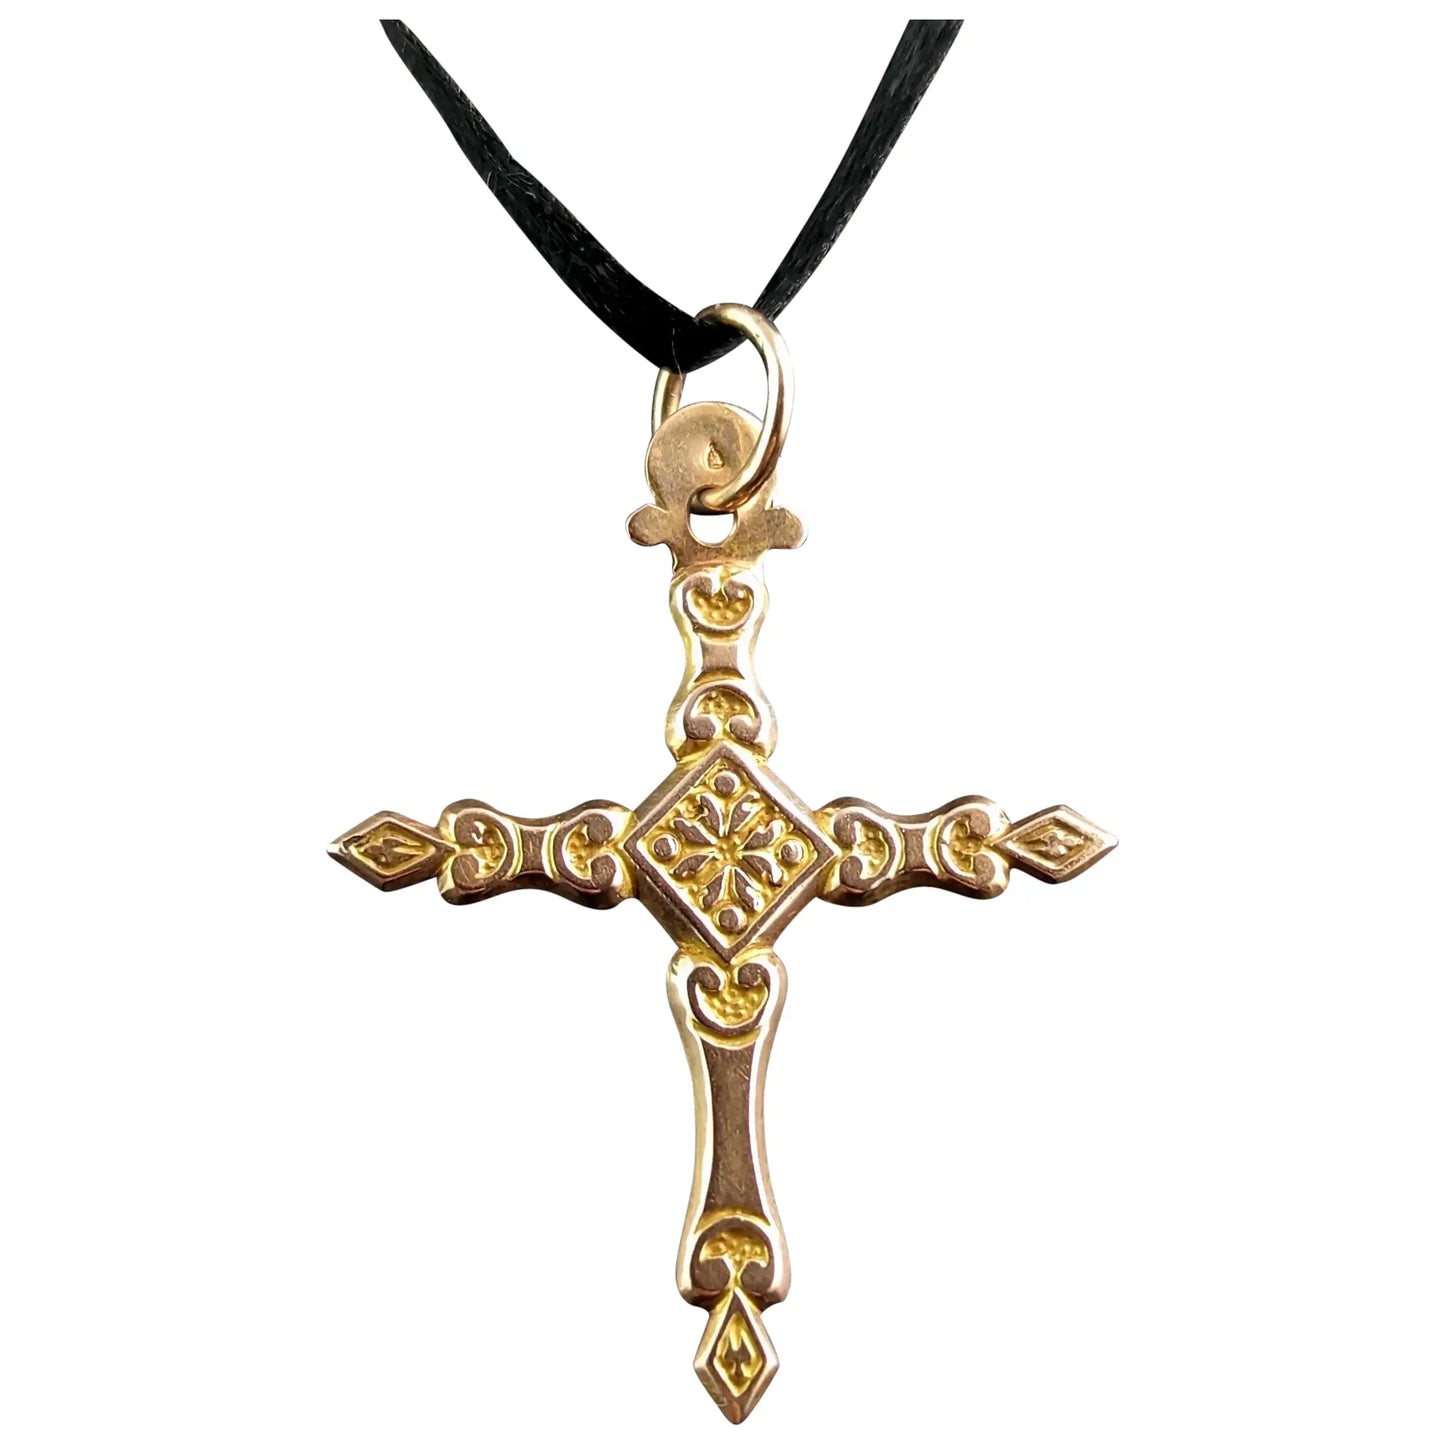 Antique 9ct gold German cross pendant, floral